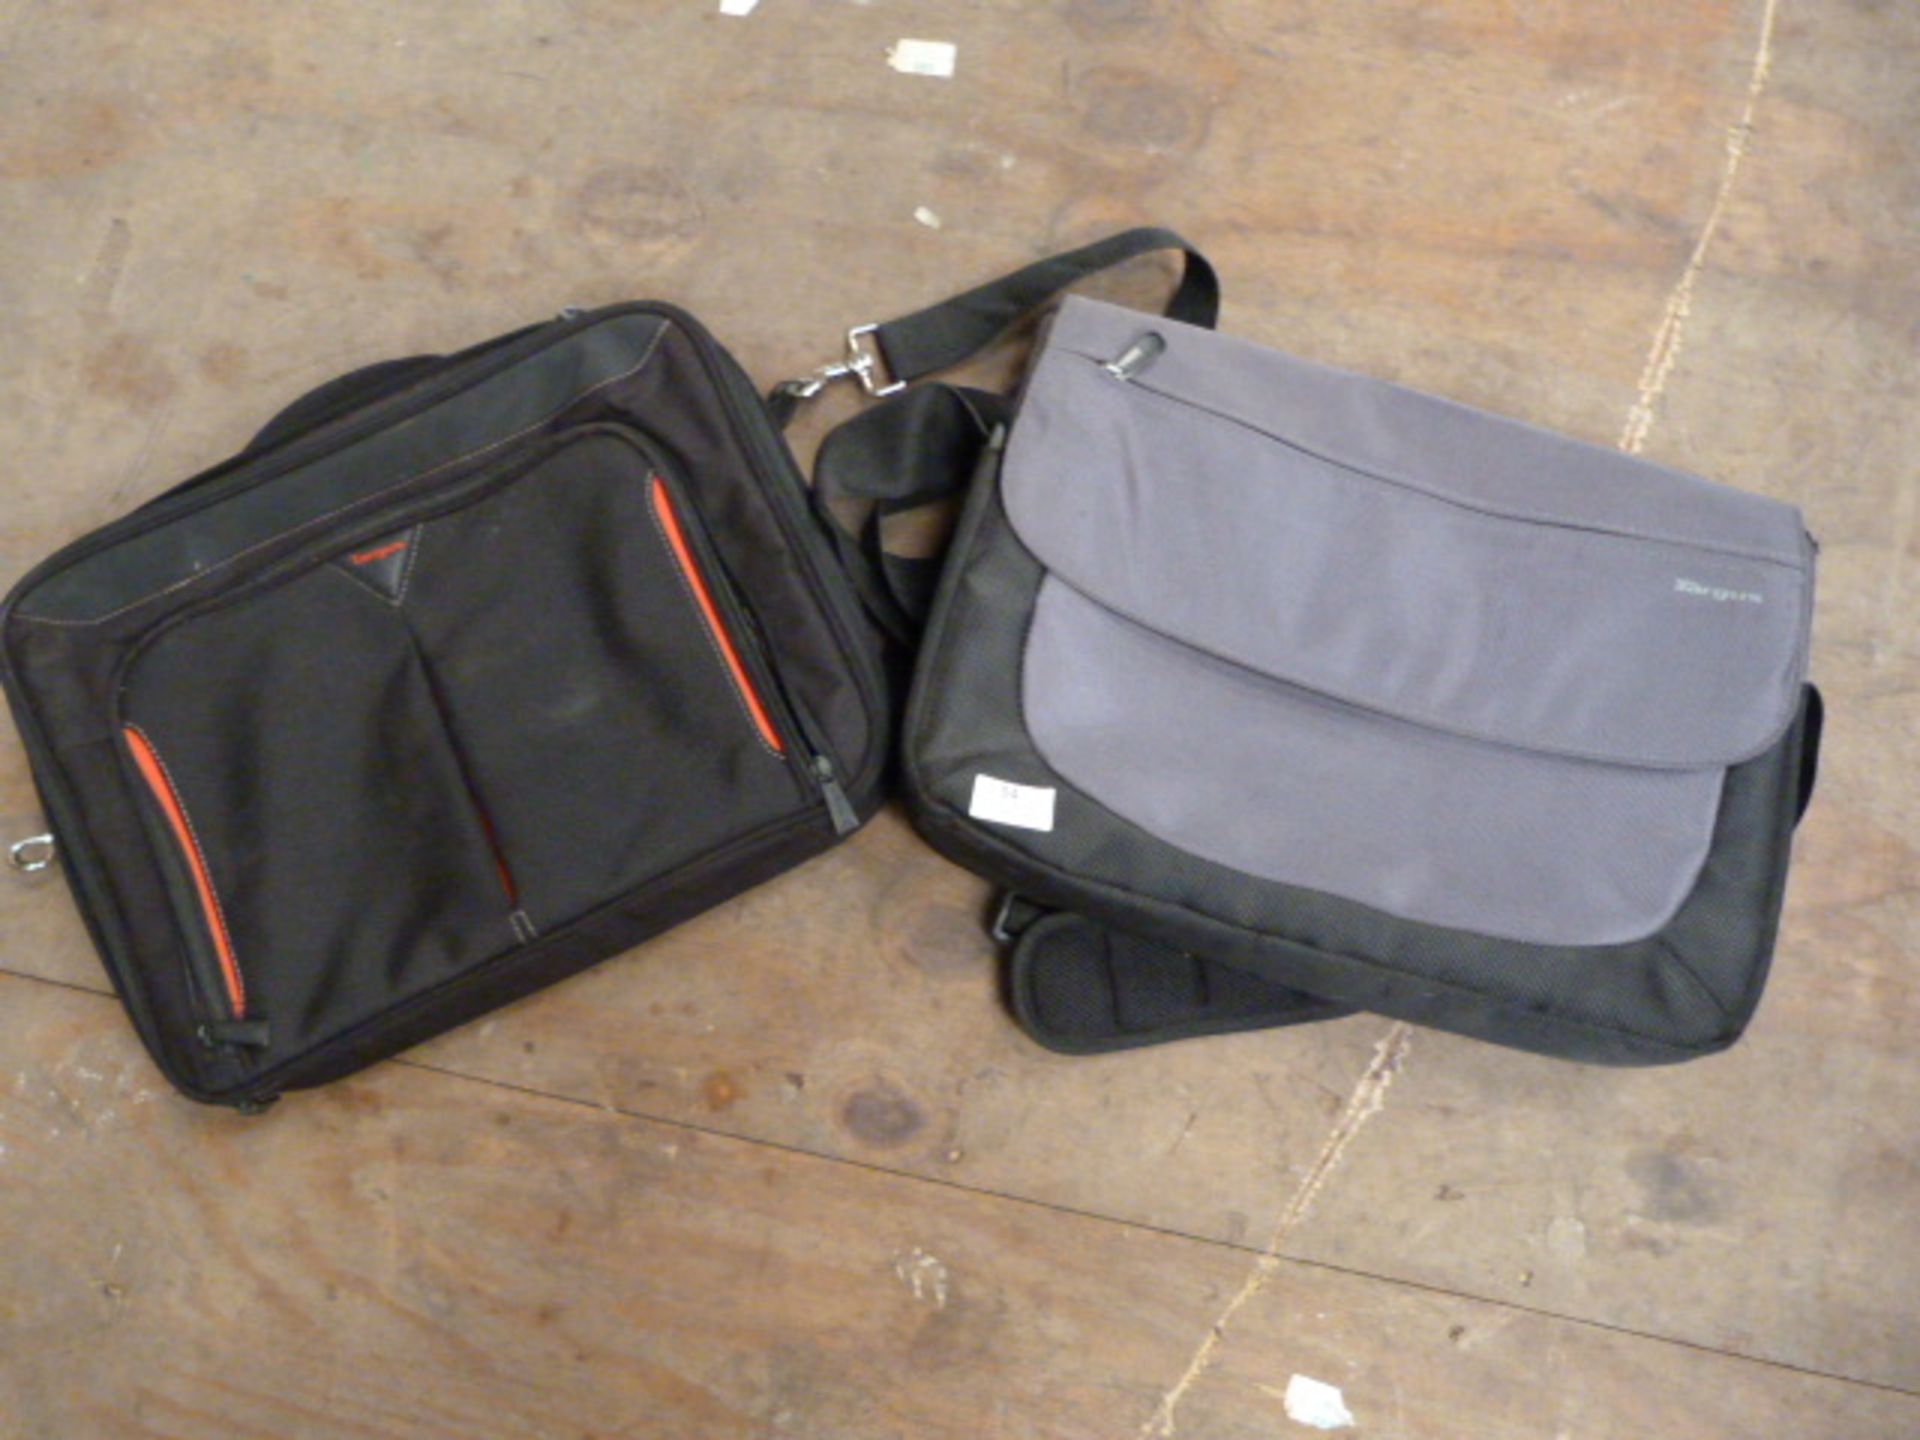 Two Targus Laptop Bags